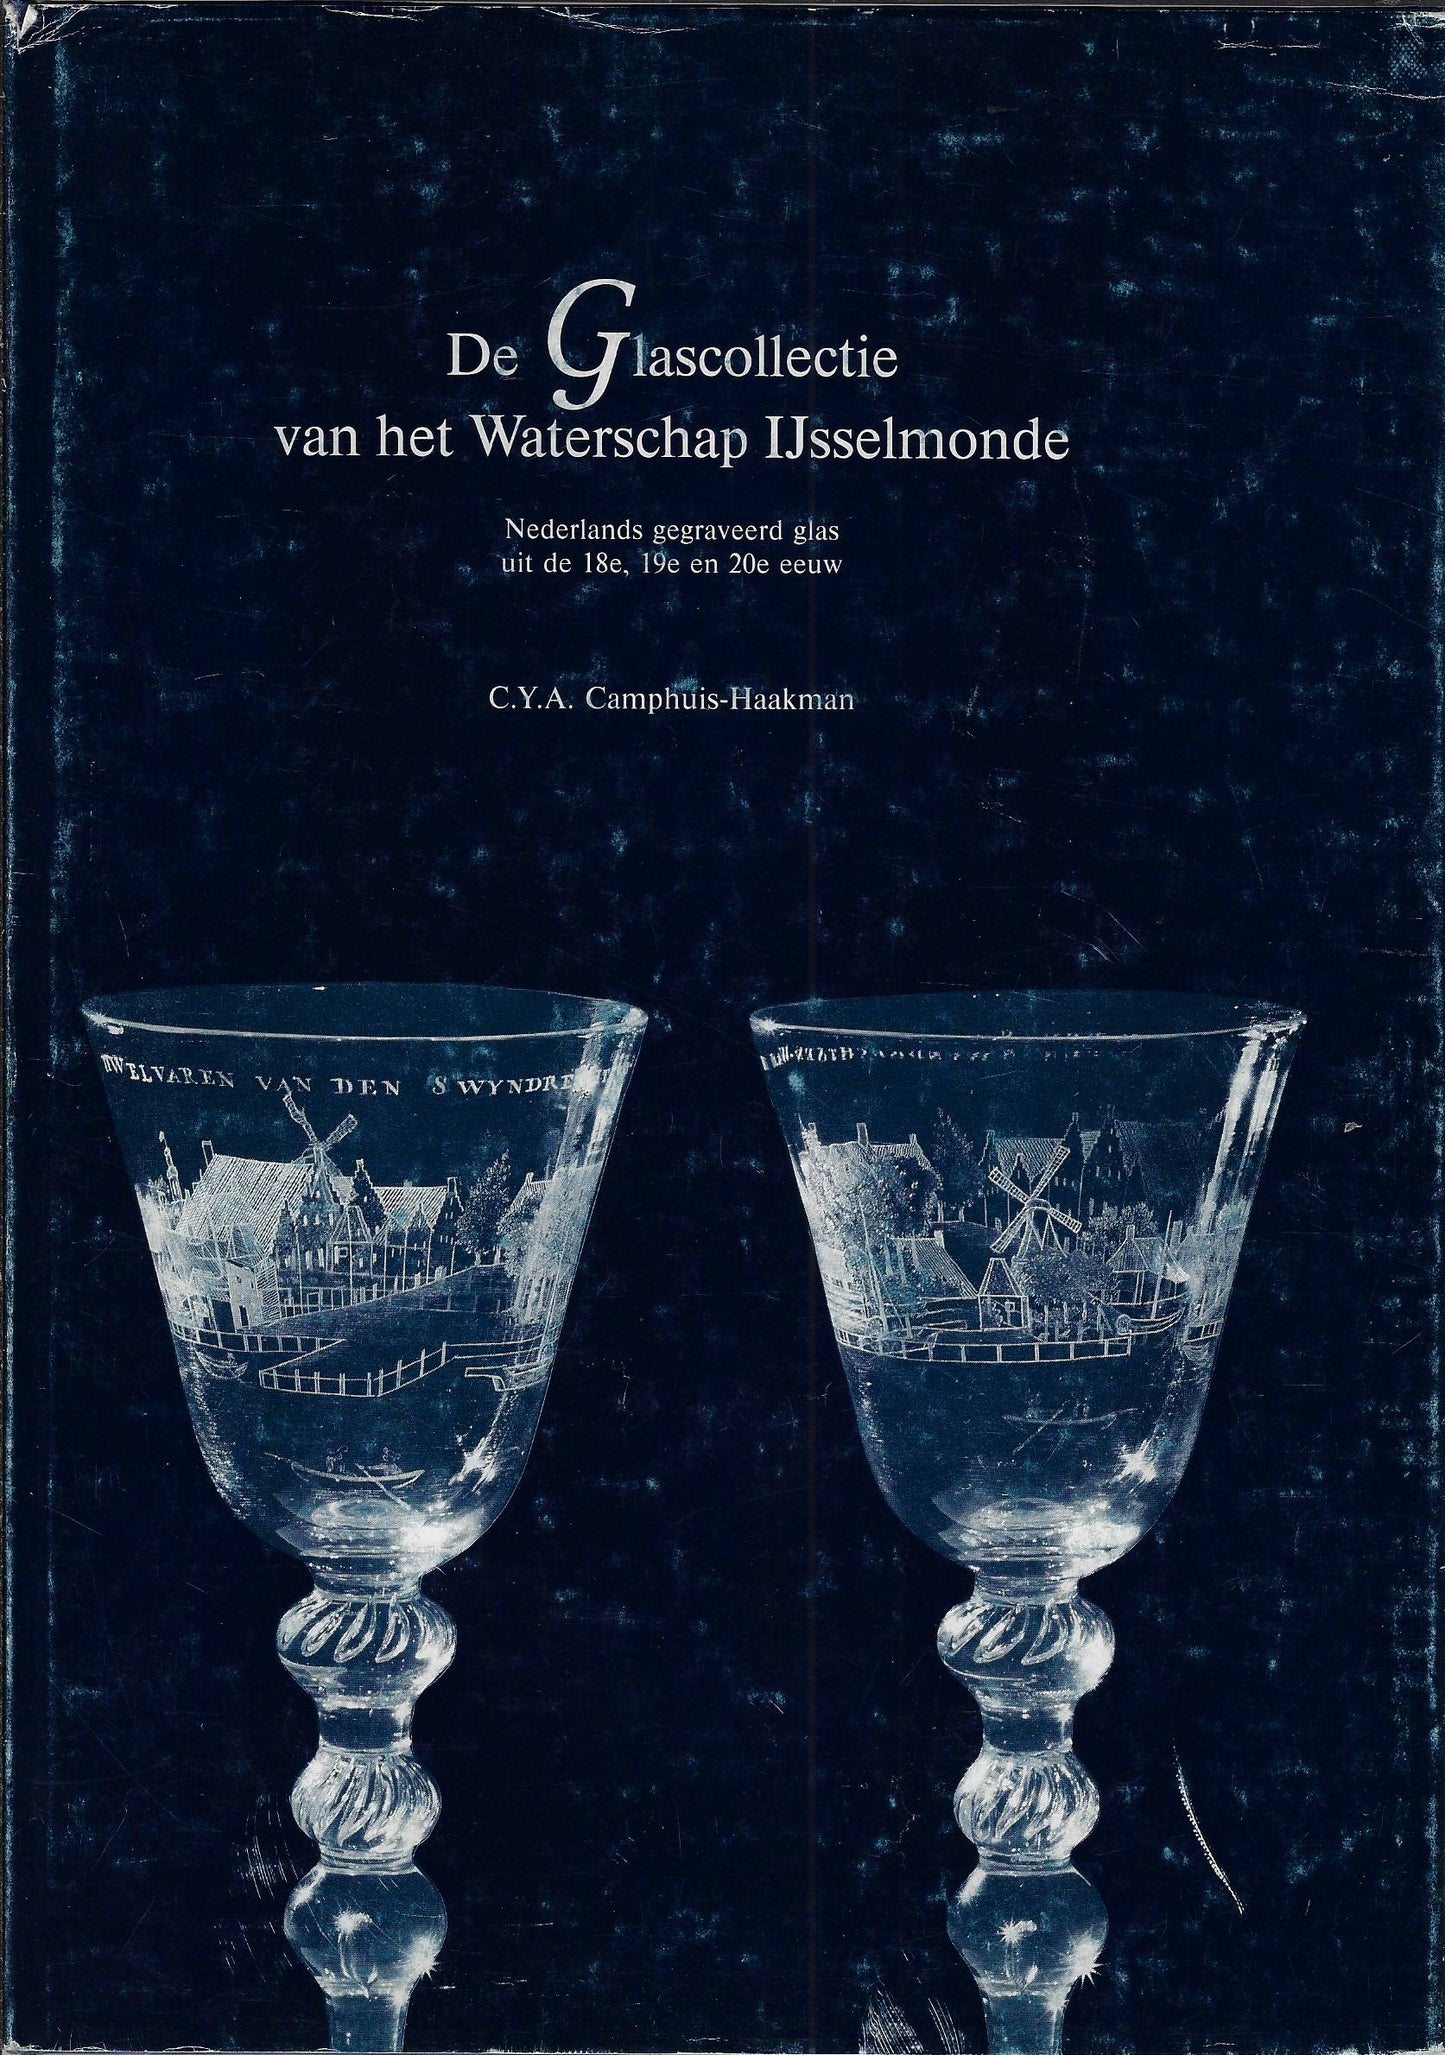 De glascollectie van het waterschap IJsselmonde